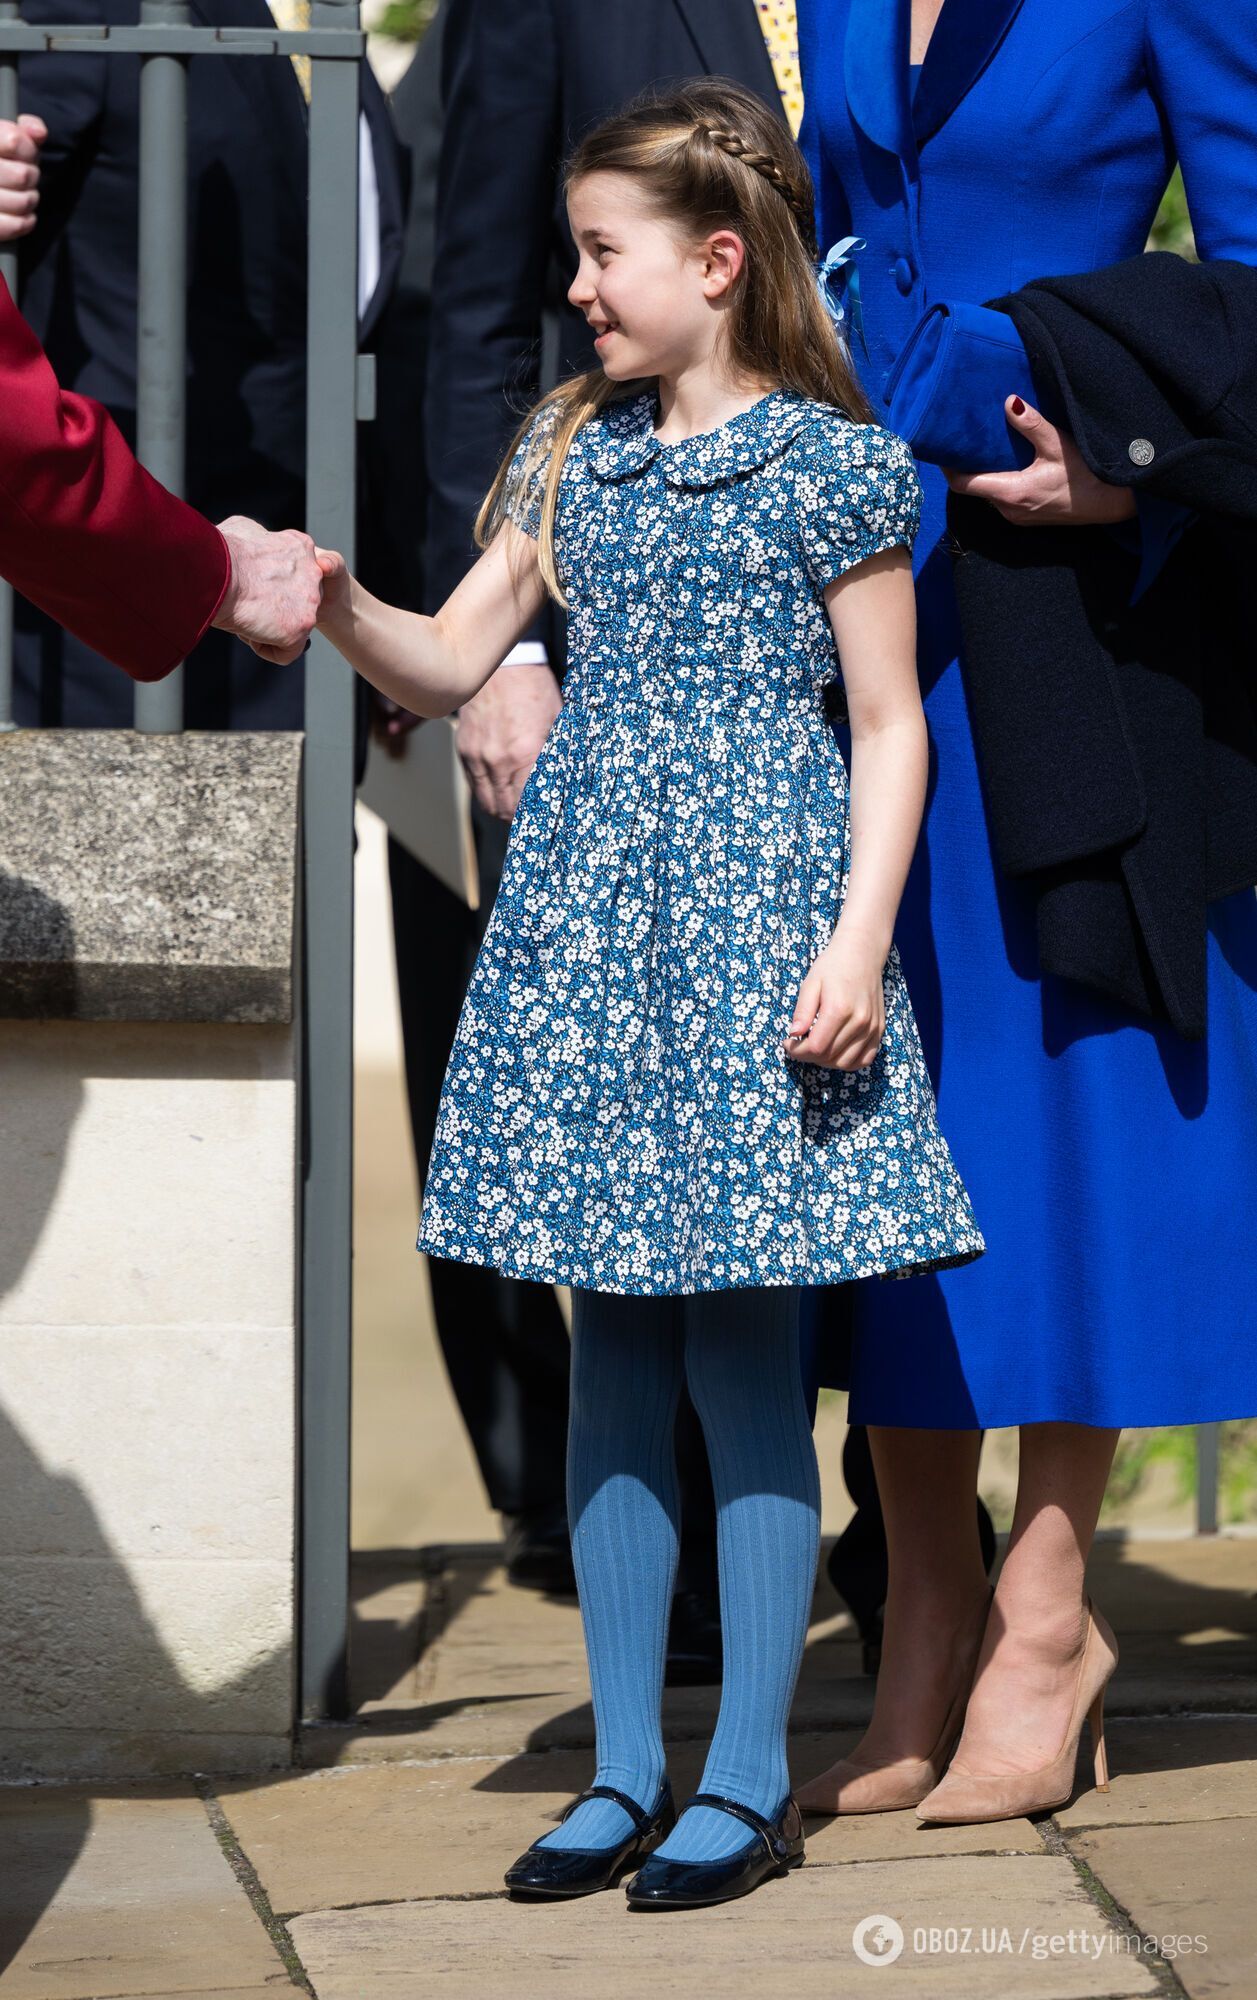 Принцесса Шарлотта – одна из самых хорошо одетых детей на планете. 10 фото, подтверждающих это